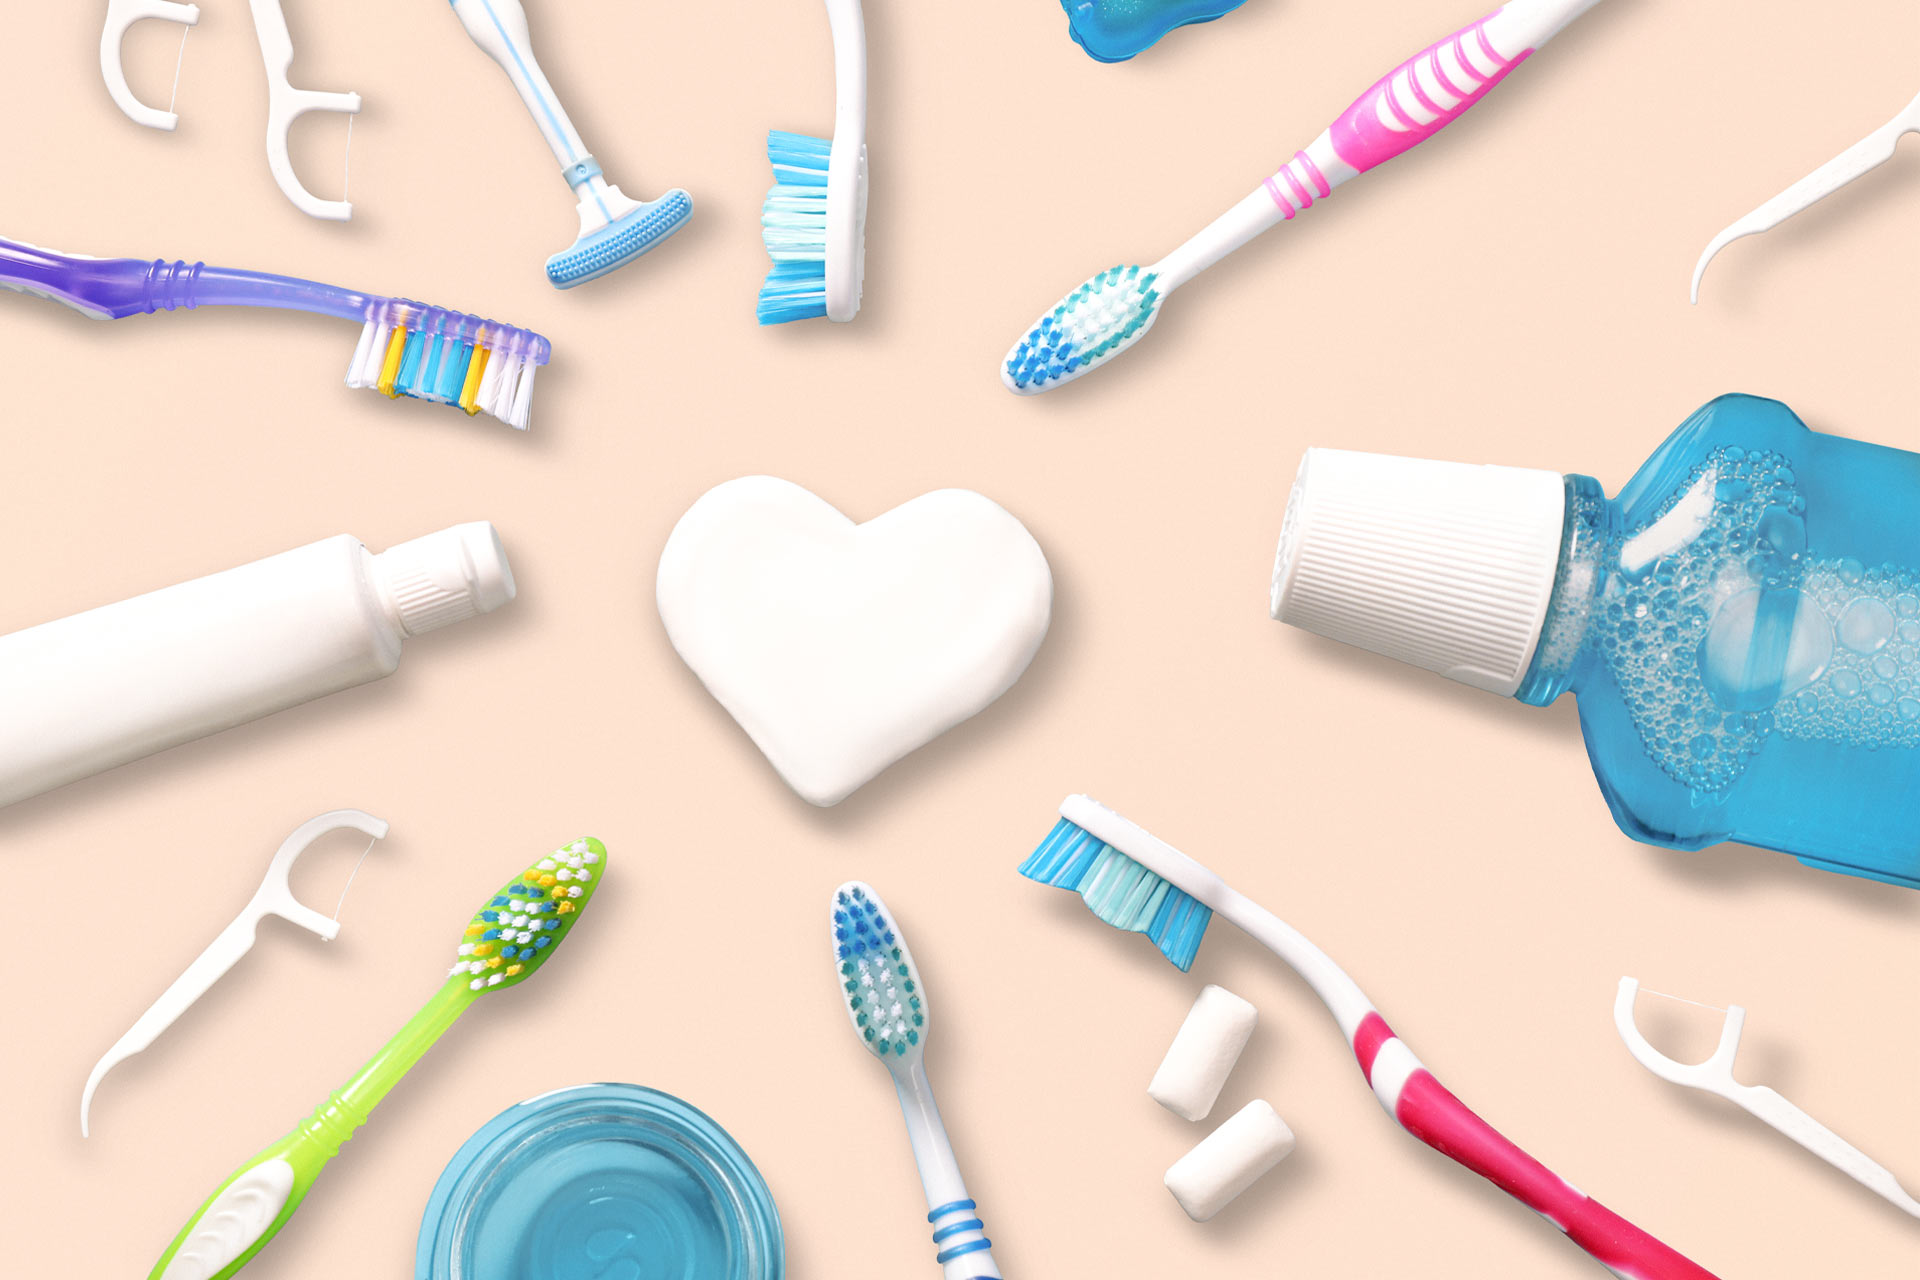 Gegenstände zur Zahnreinigung wie Zahnseide, Zahnbürtse, Mundwasser auf einem beige rosa Hintergrund